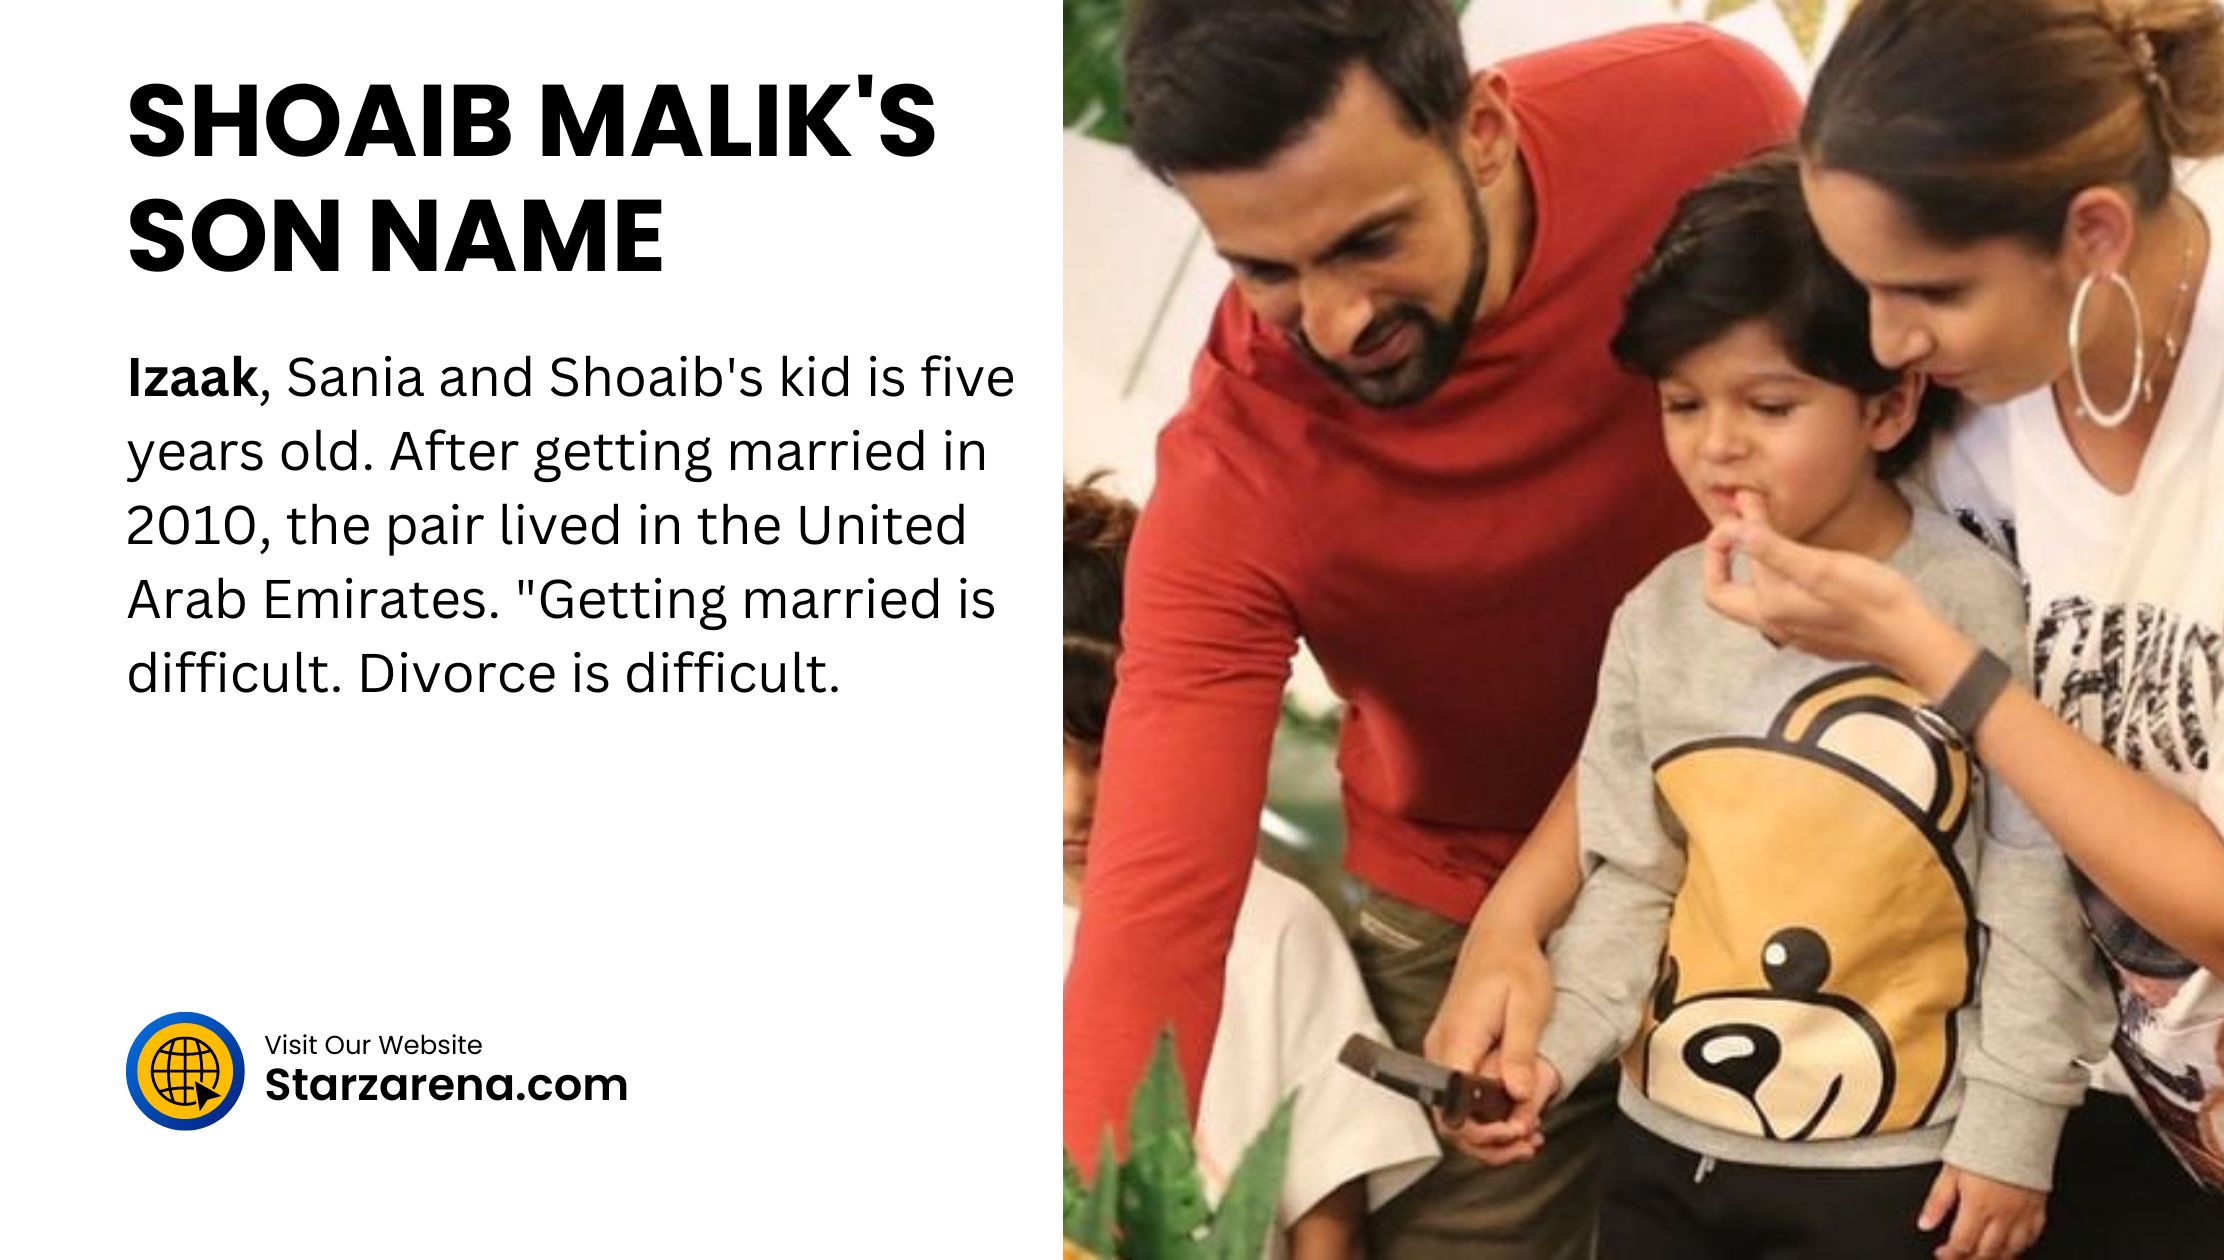 SHOAIB MALIK'S SON NAME